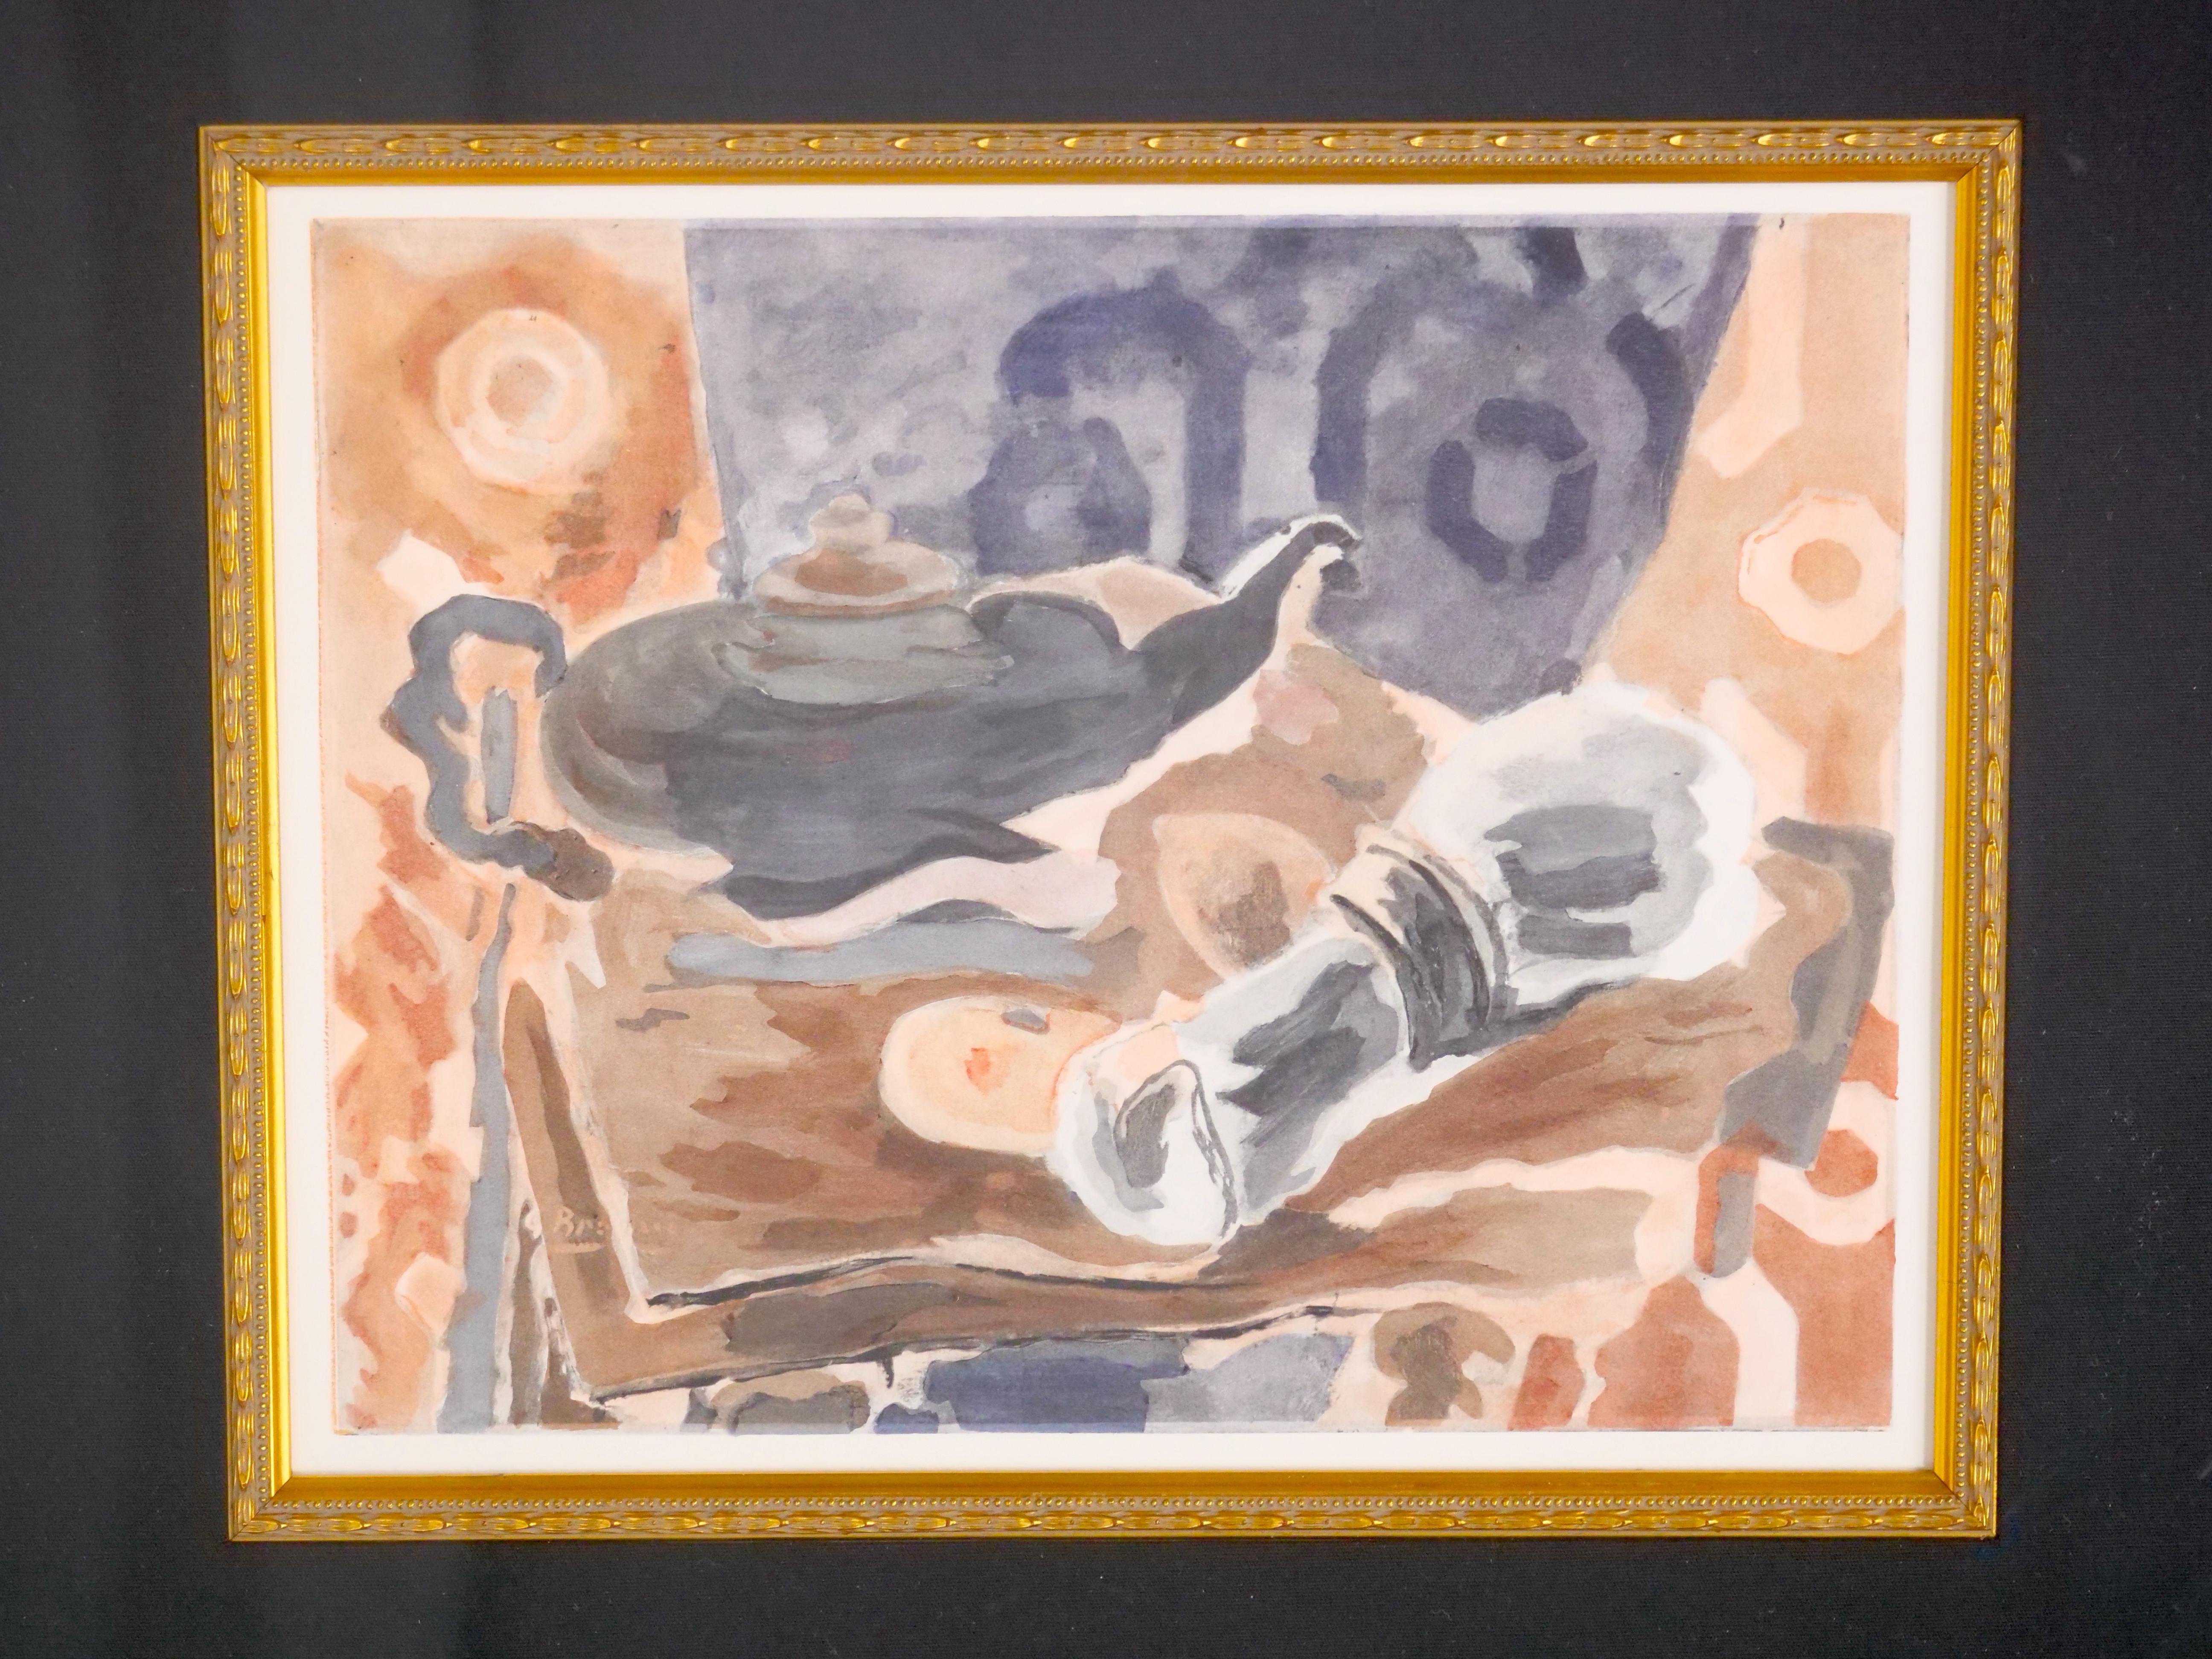 Rehaussez votre collection d'art avec cette exquise lithographie encadrée en bois doré du célèbre artiste George Braque intitulée 